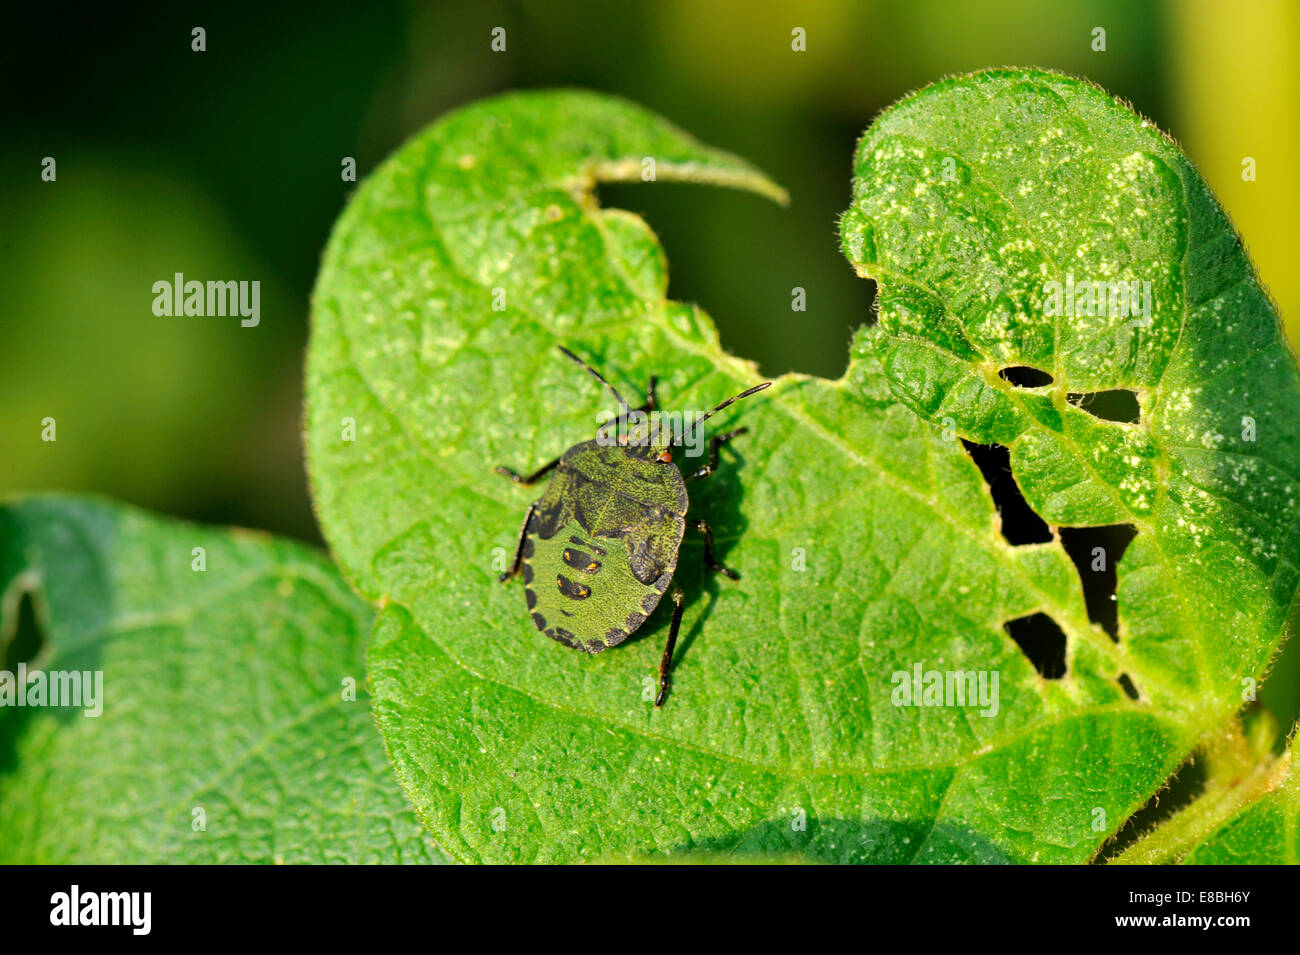 Le Bouclier vert commun Bug, Palomena prasina, 3ème stade nymphe sur feuilles de haricots, du sud-ouest de l'Angleterre Banque D'Images